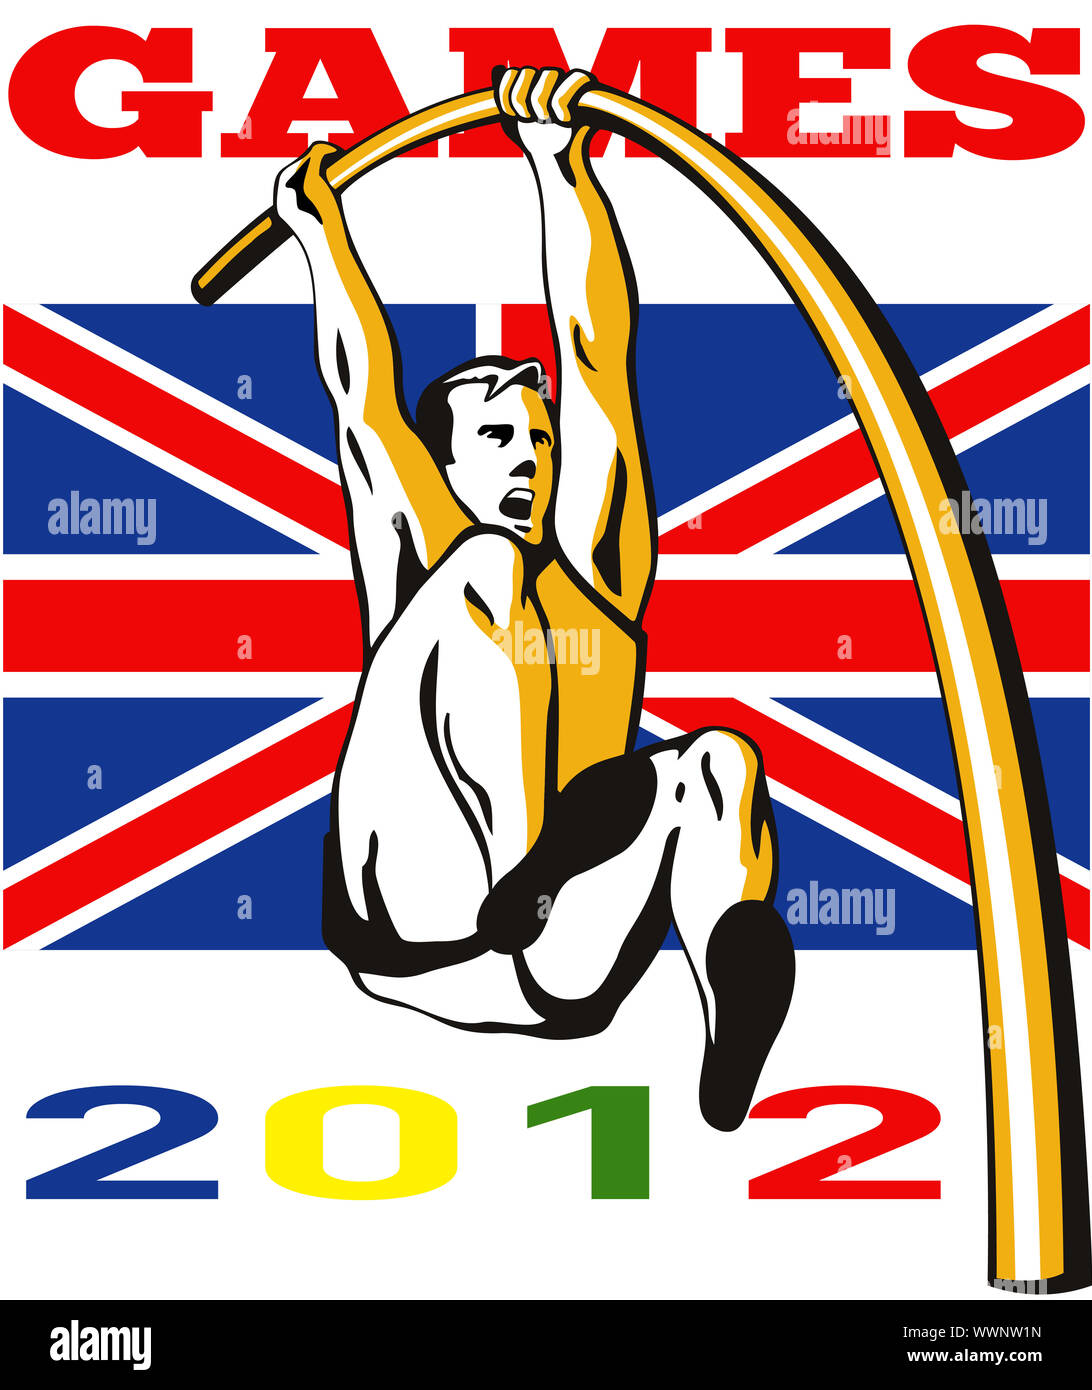 Abbildung ein Athlet Stabhochsprung Hochsprung springen mit Wörtern spielen 2012 und Union Jack britische britische Flagge im retro-Stil gemacht. Stockfoto